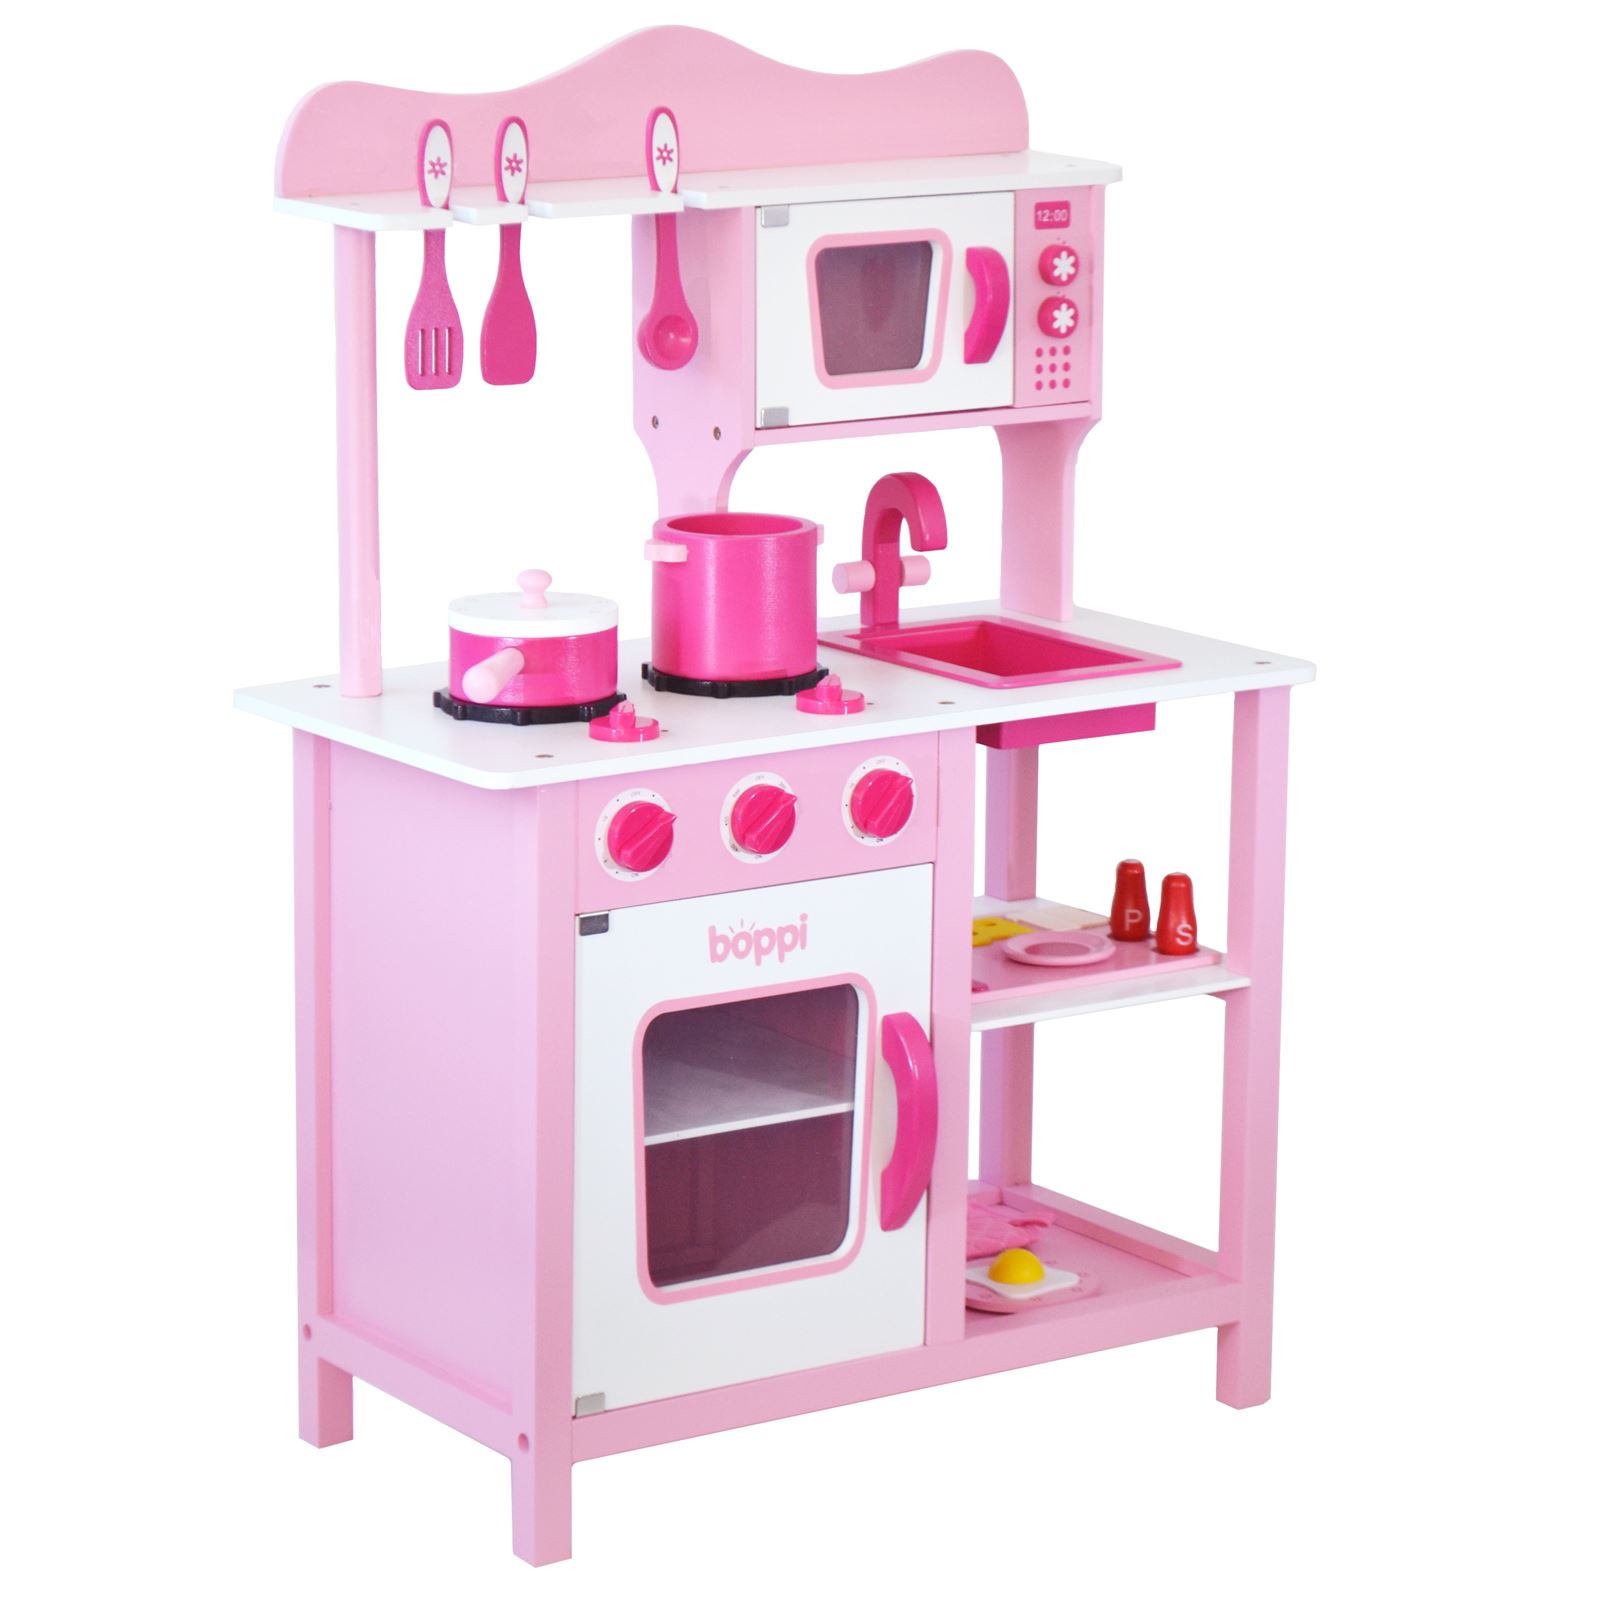 Kinder Kuchenset 20 Teile Zubehör Küchenspielzeug Spielküche Rosa PP 